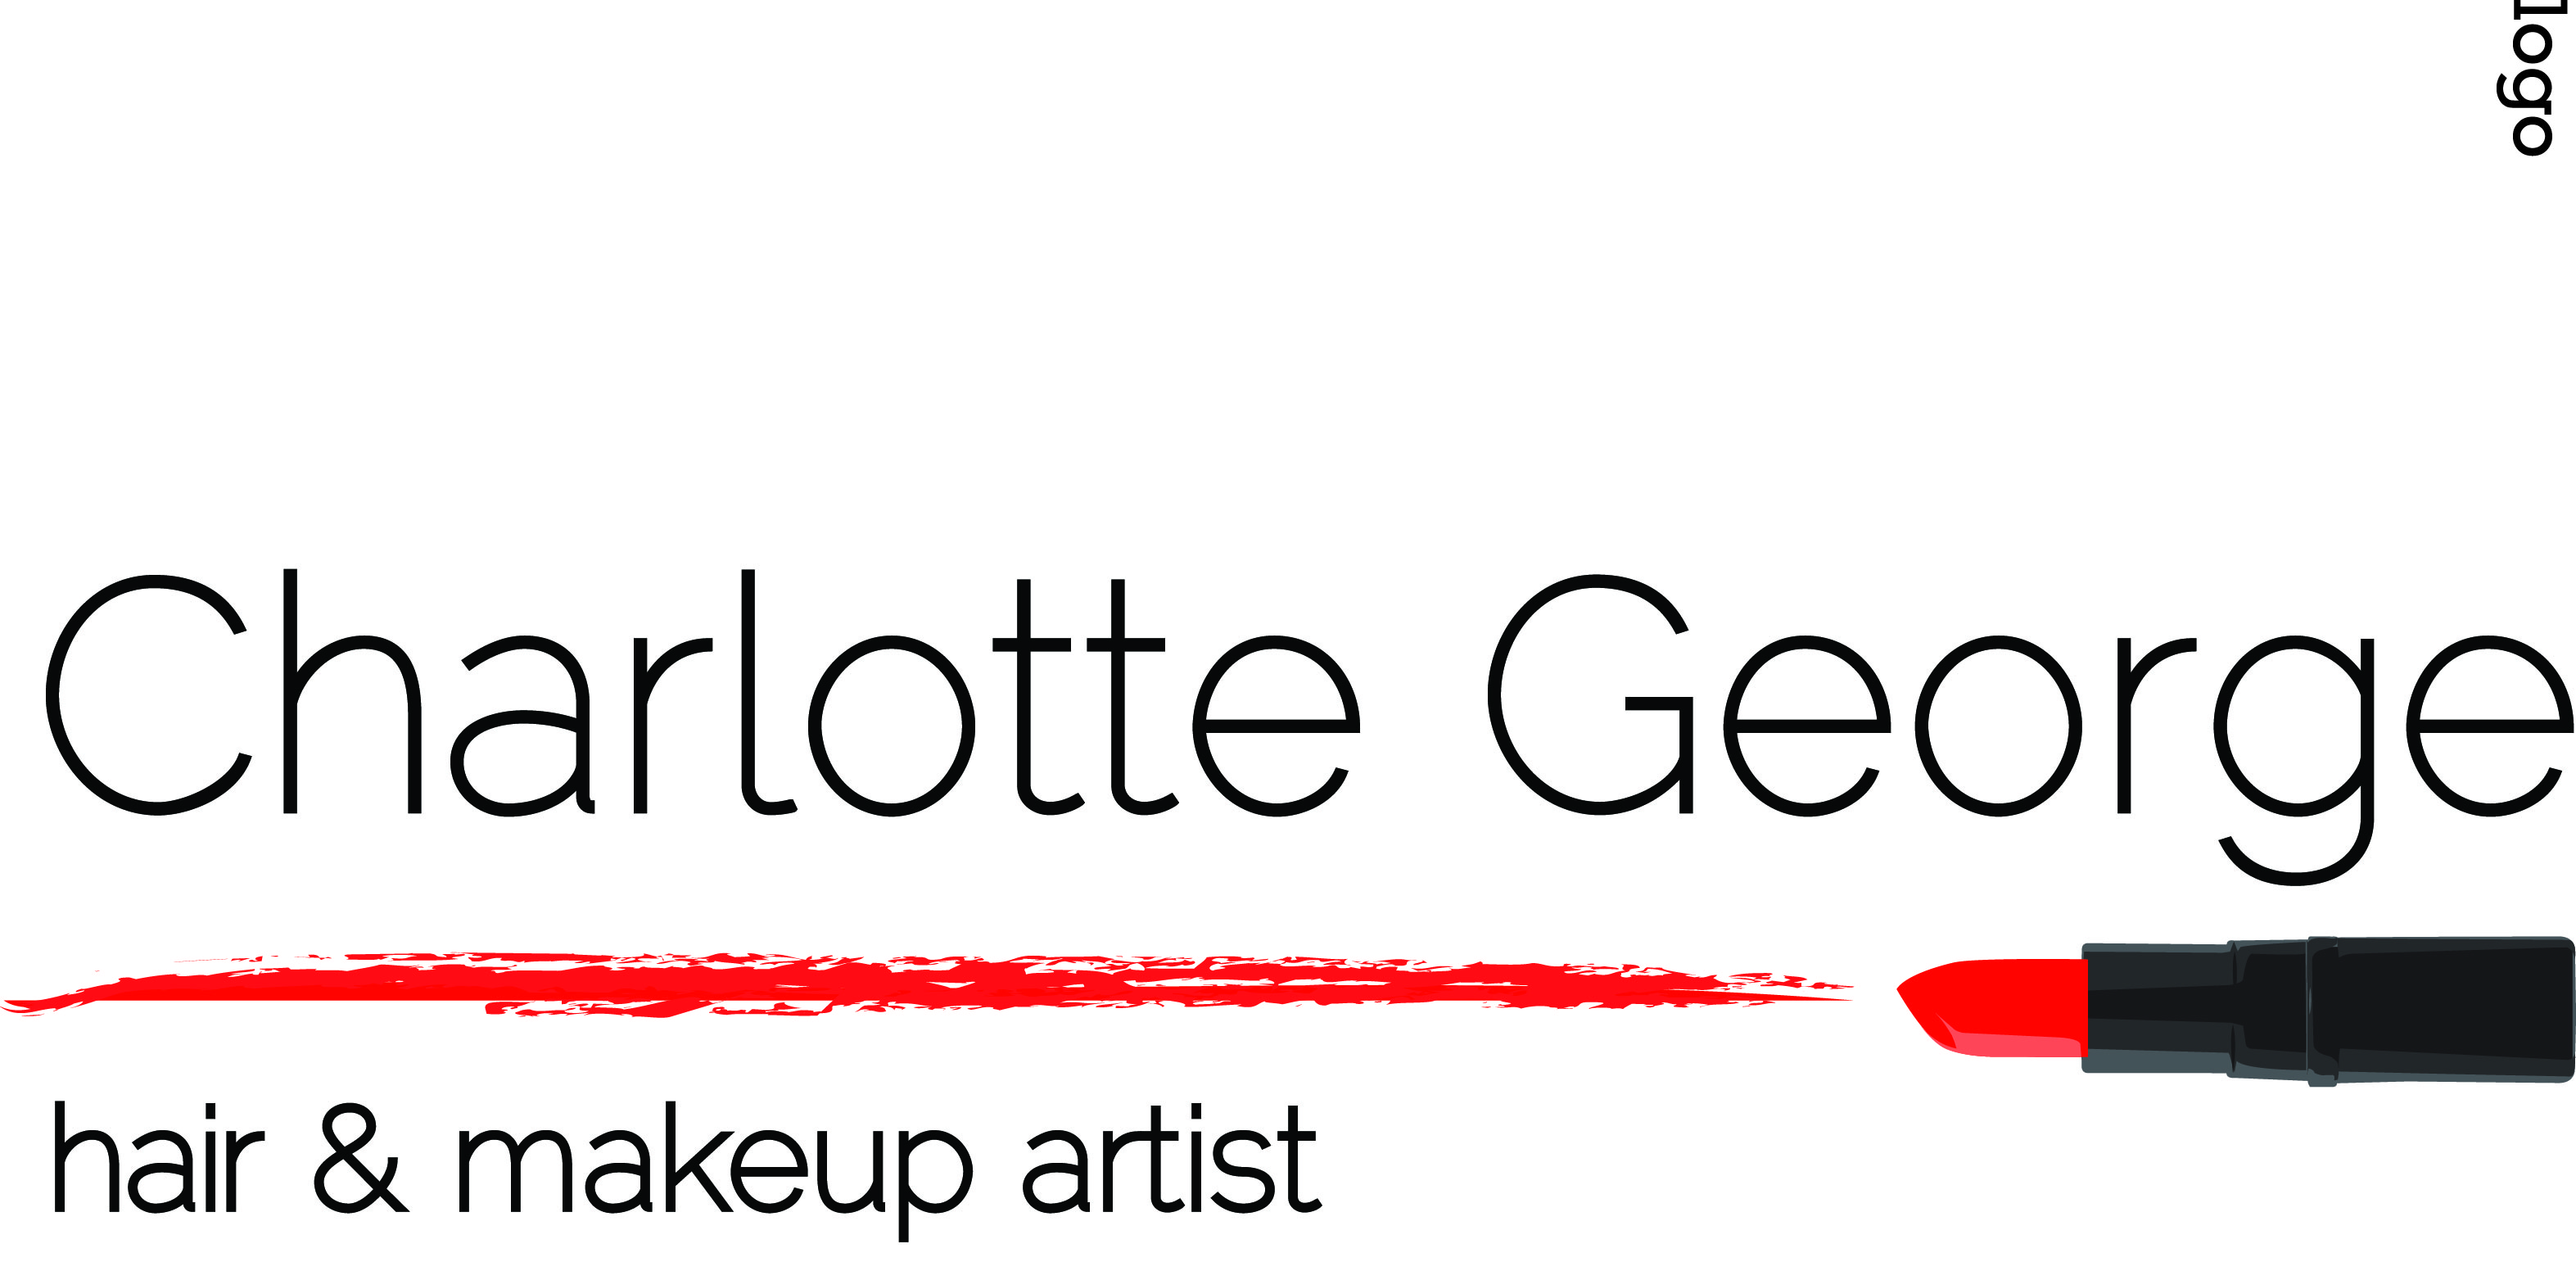 Makeup artist Logos